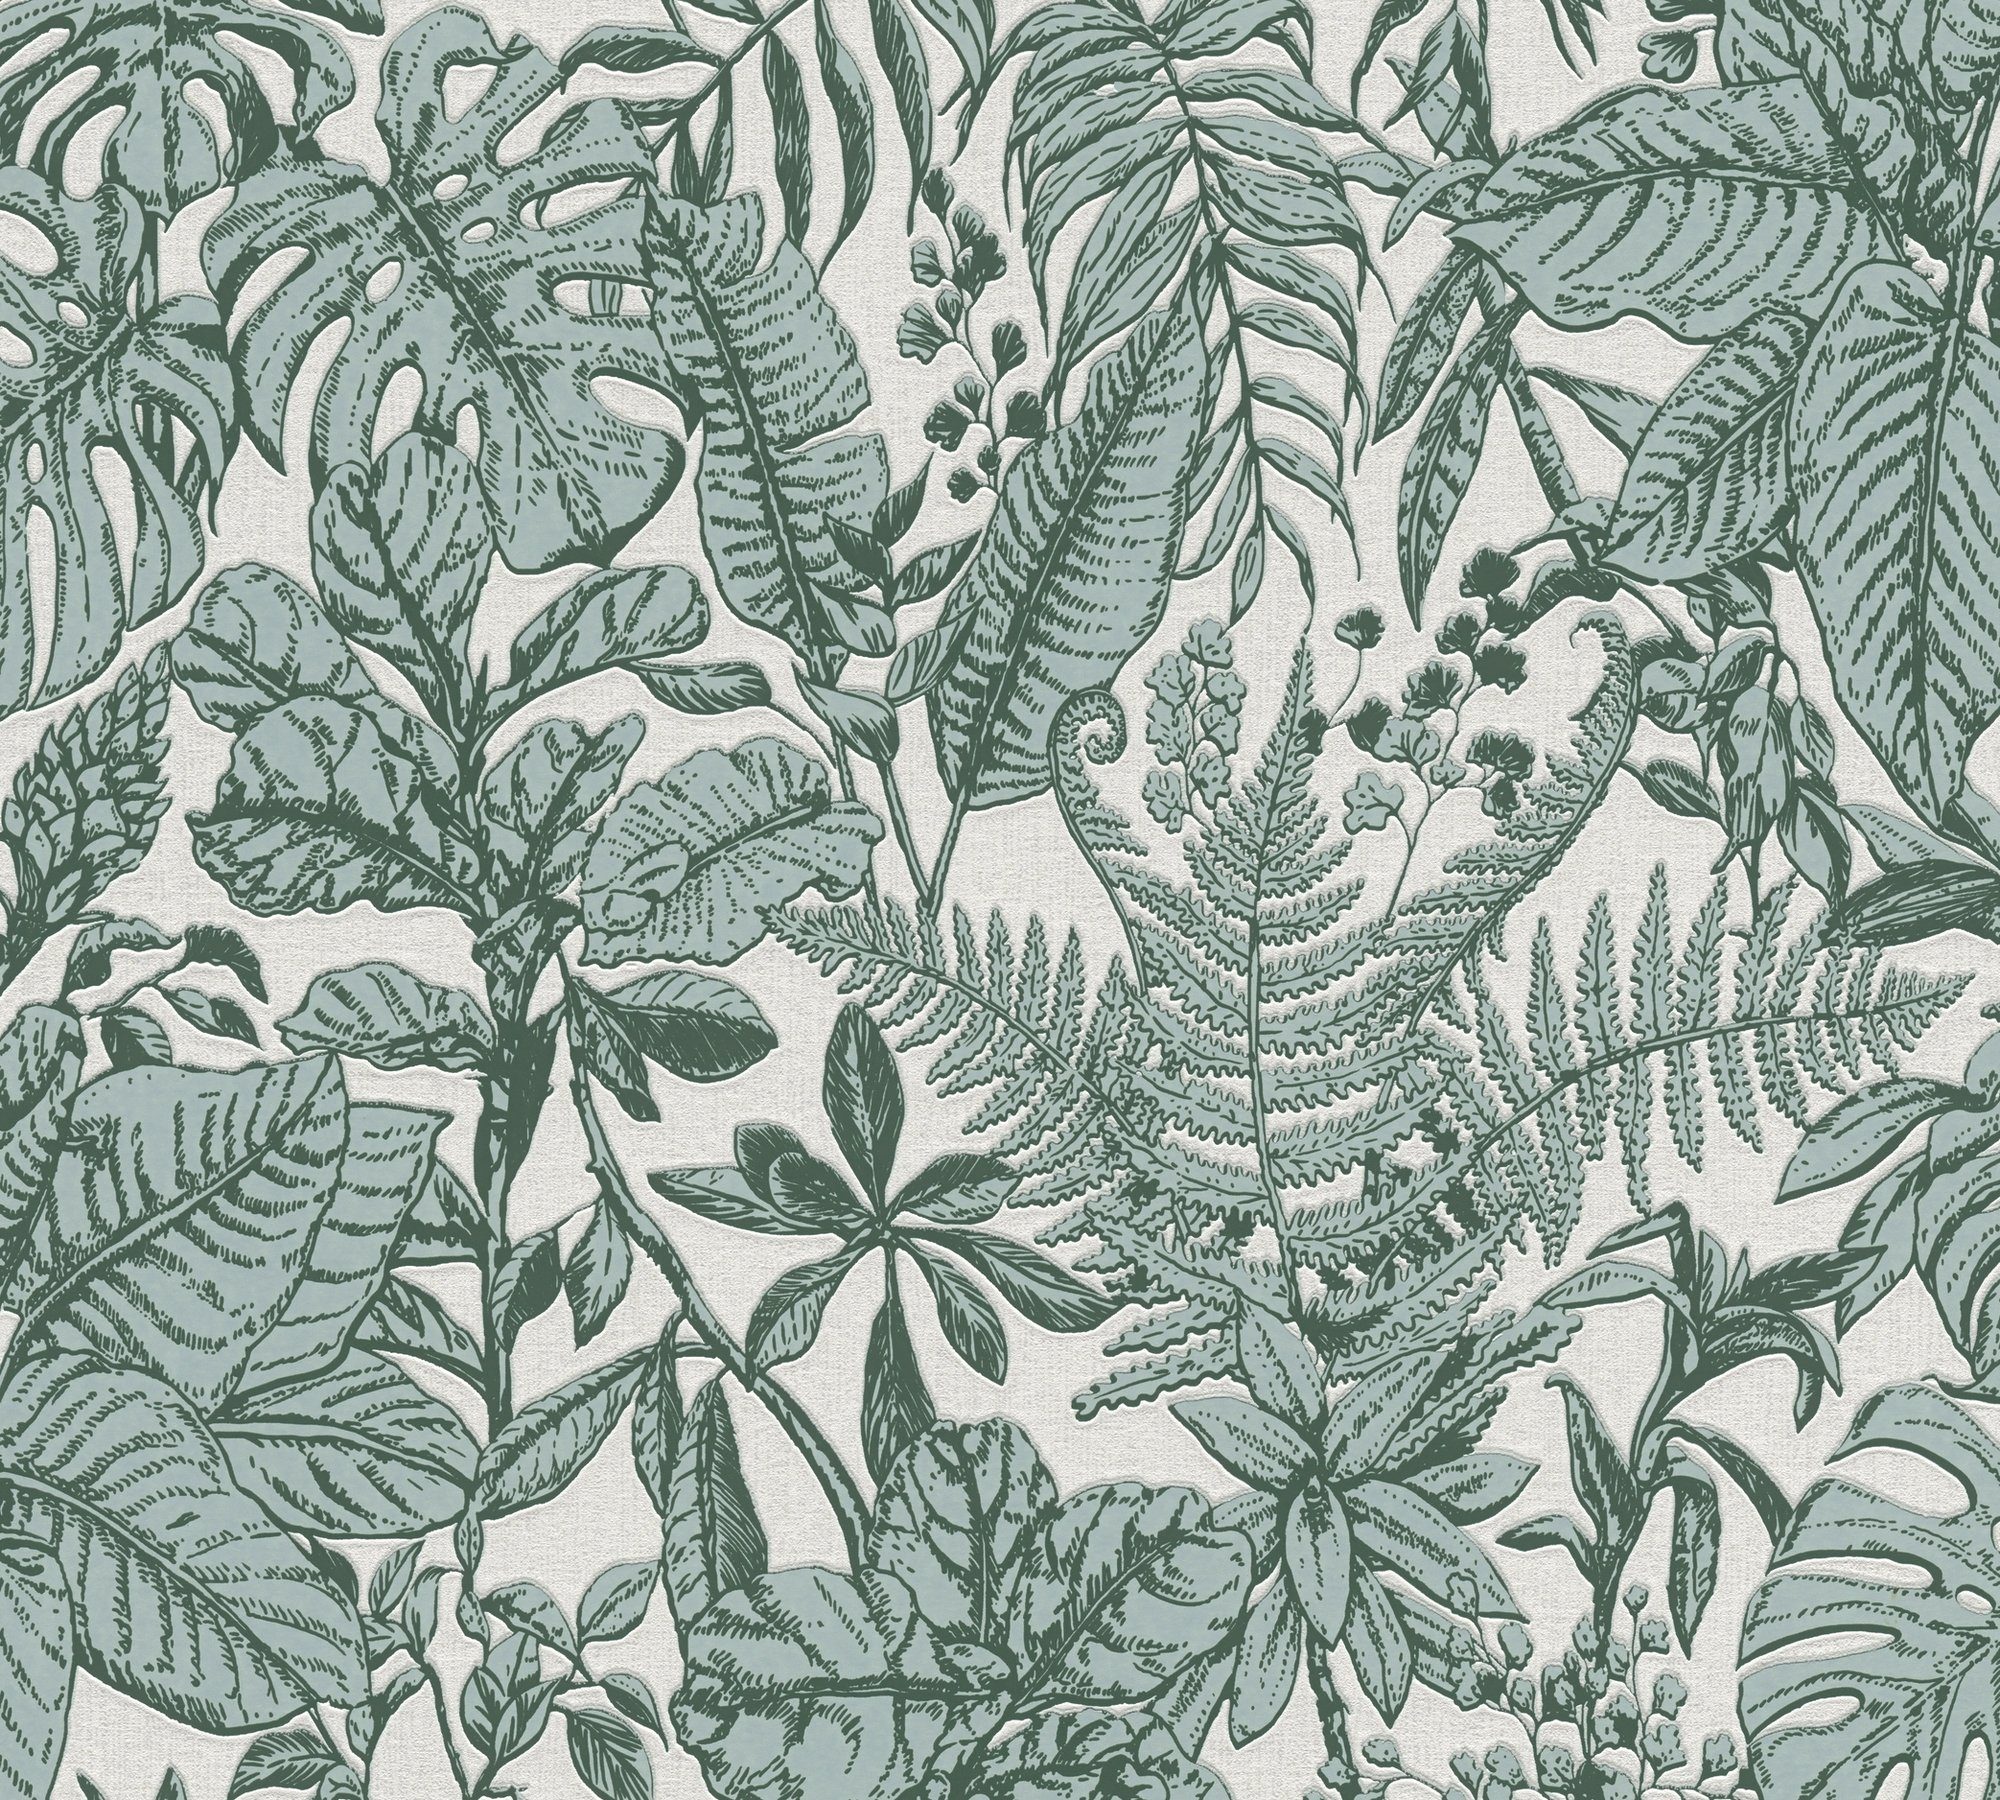 botanisch, Hechter Création Designertapete A.S. Dschungel Vliestapete weiß/grau/tannengrün Dschungel, tropisch, Daniel Tapete